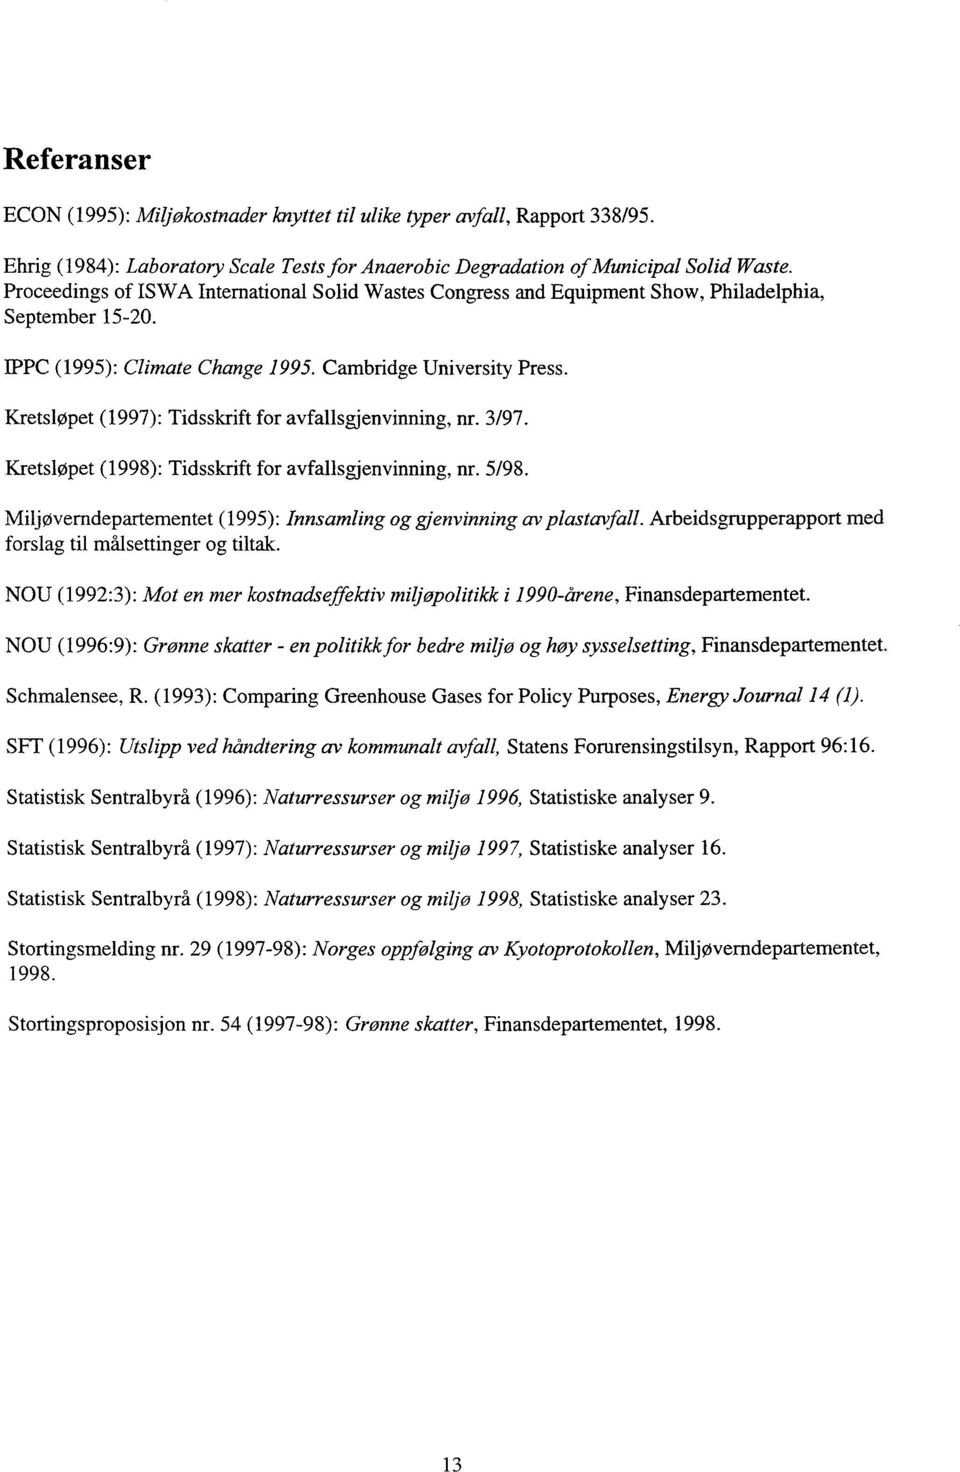 Kretsløpet (1997): Tidsskrift for avfallsgjenvinning, nr. 3/97. Kretsløpet (1998): Tidsskrift for avfallsgjenvinning, nr. 5/98. Miljøverndepartementet (1995): Innsamling og gjenvinning av plastavfall.